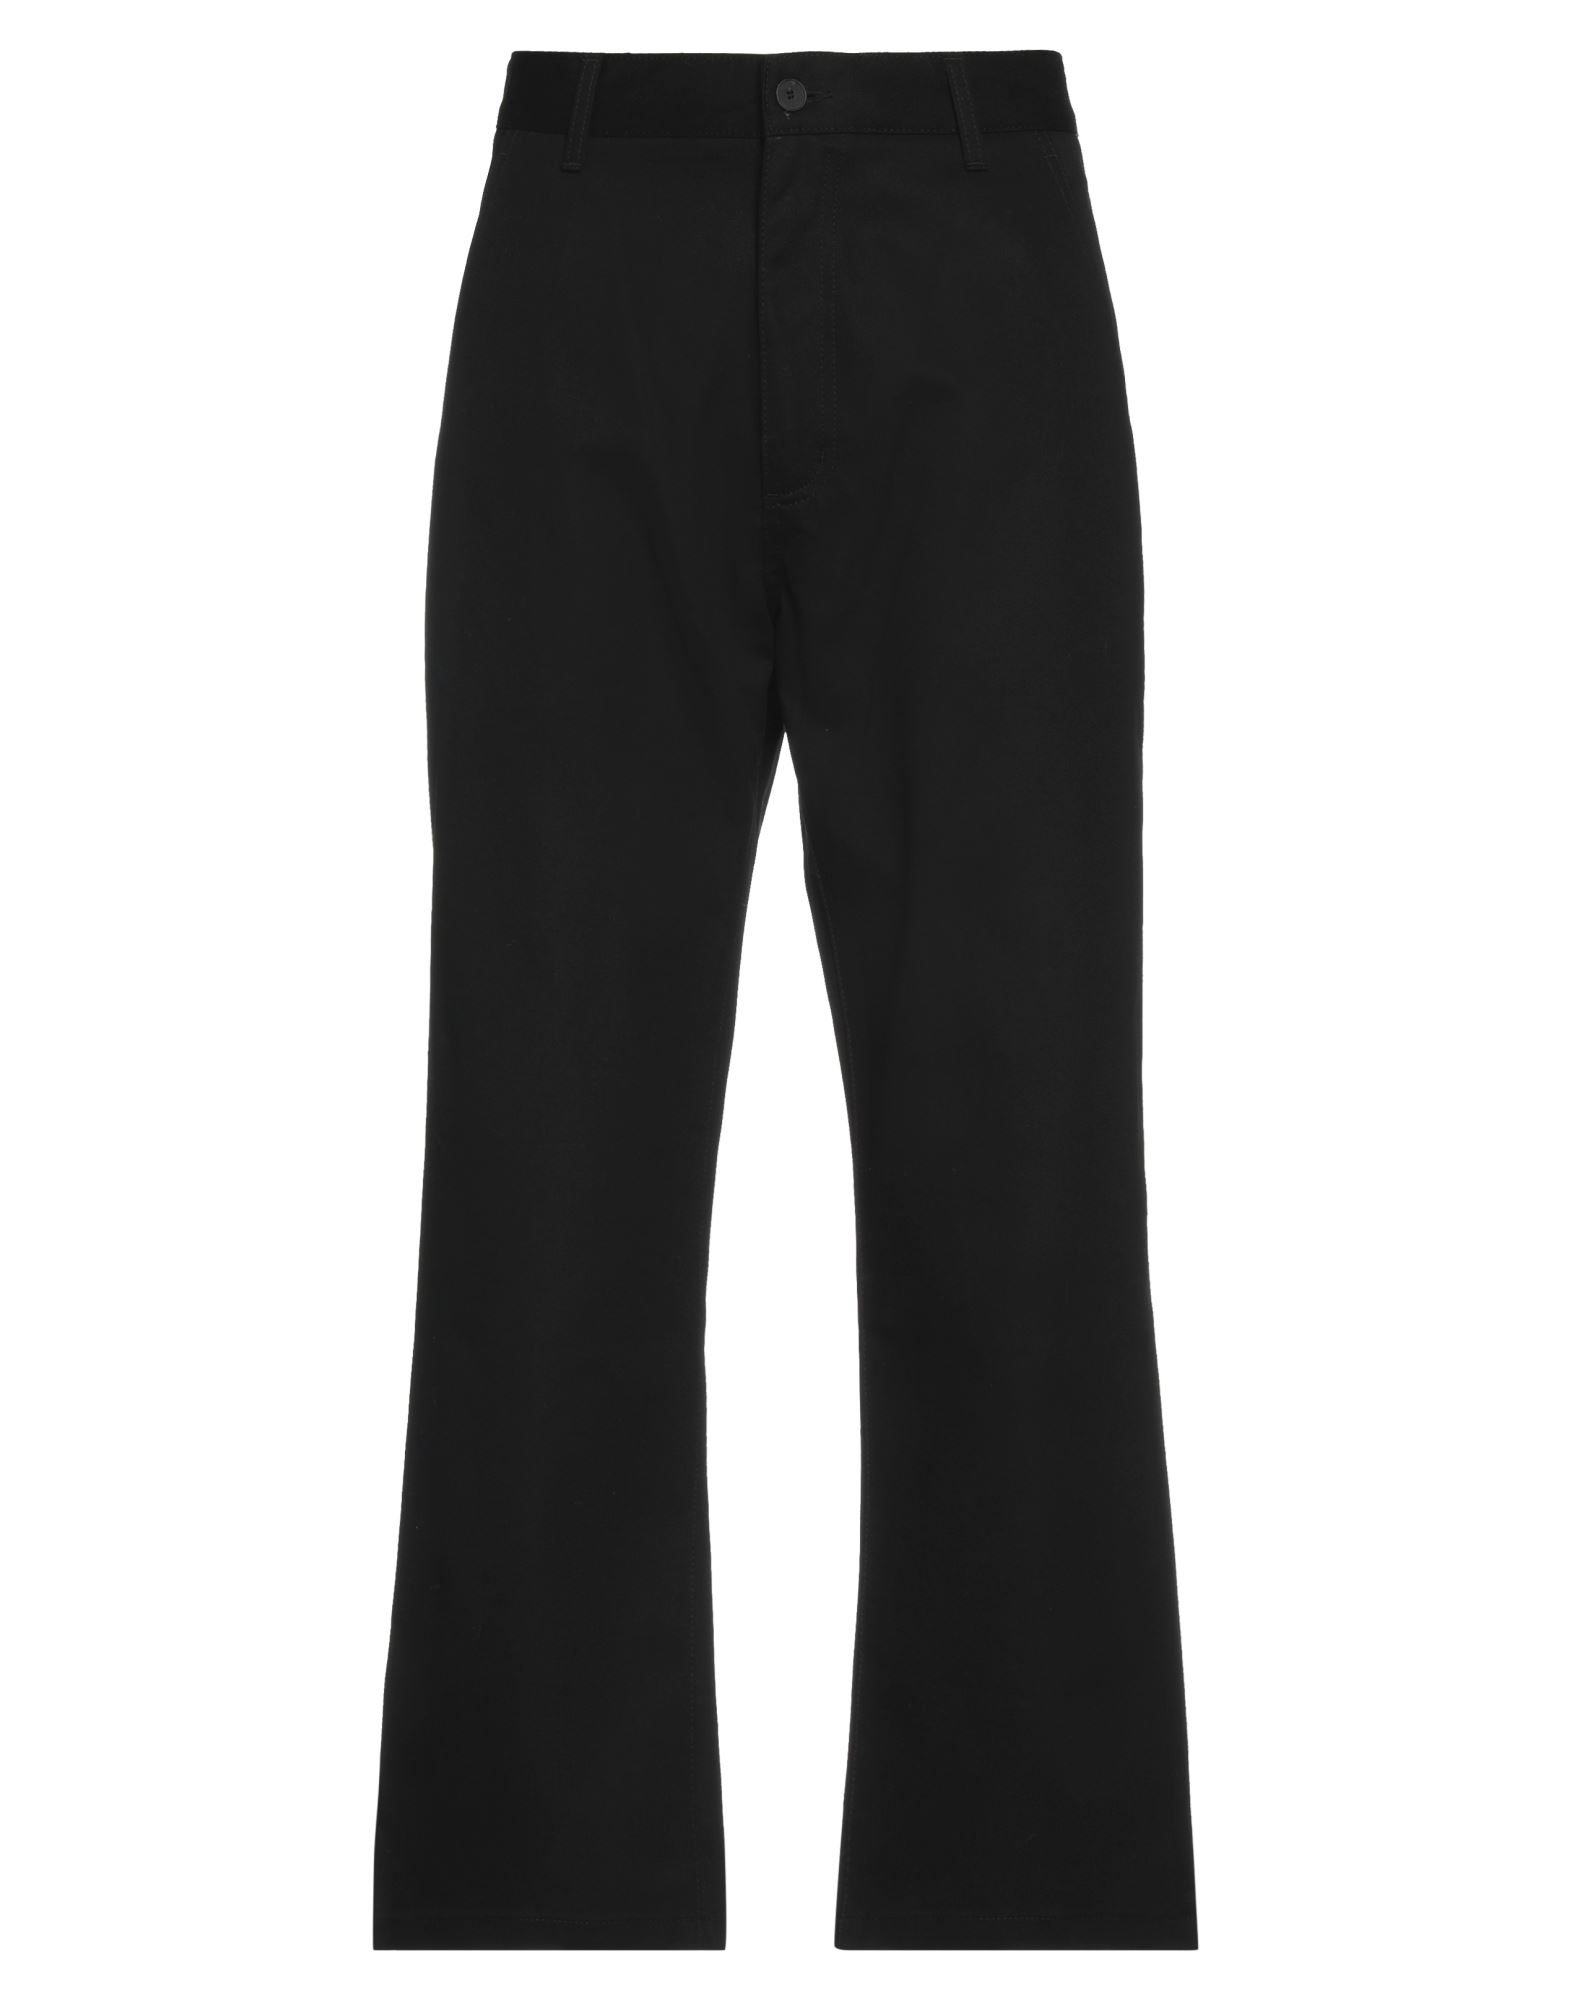 Uniform Bridge & Co. Pants In Black